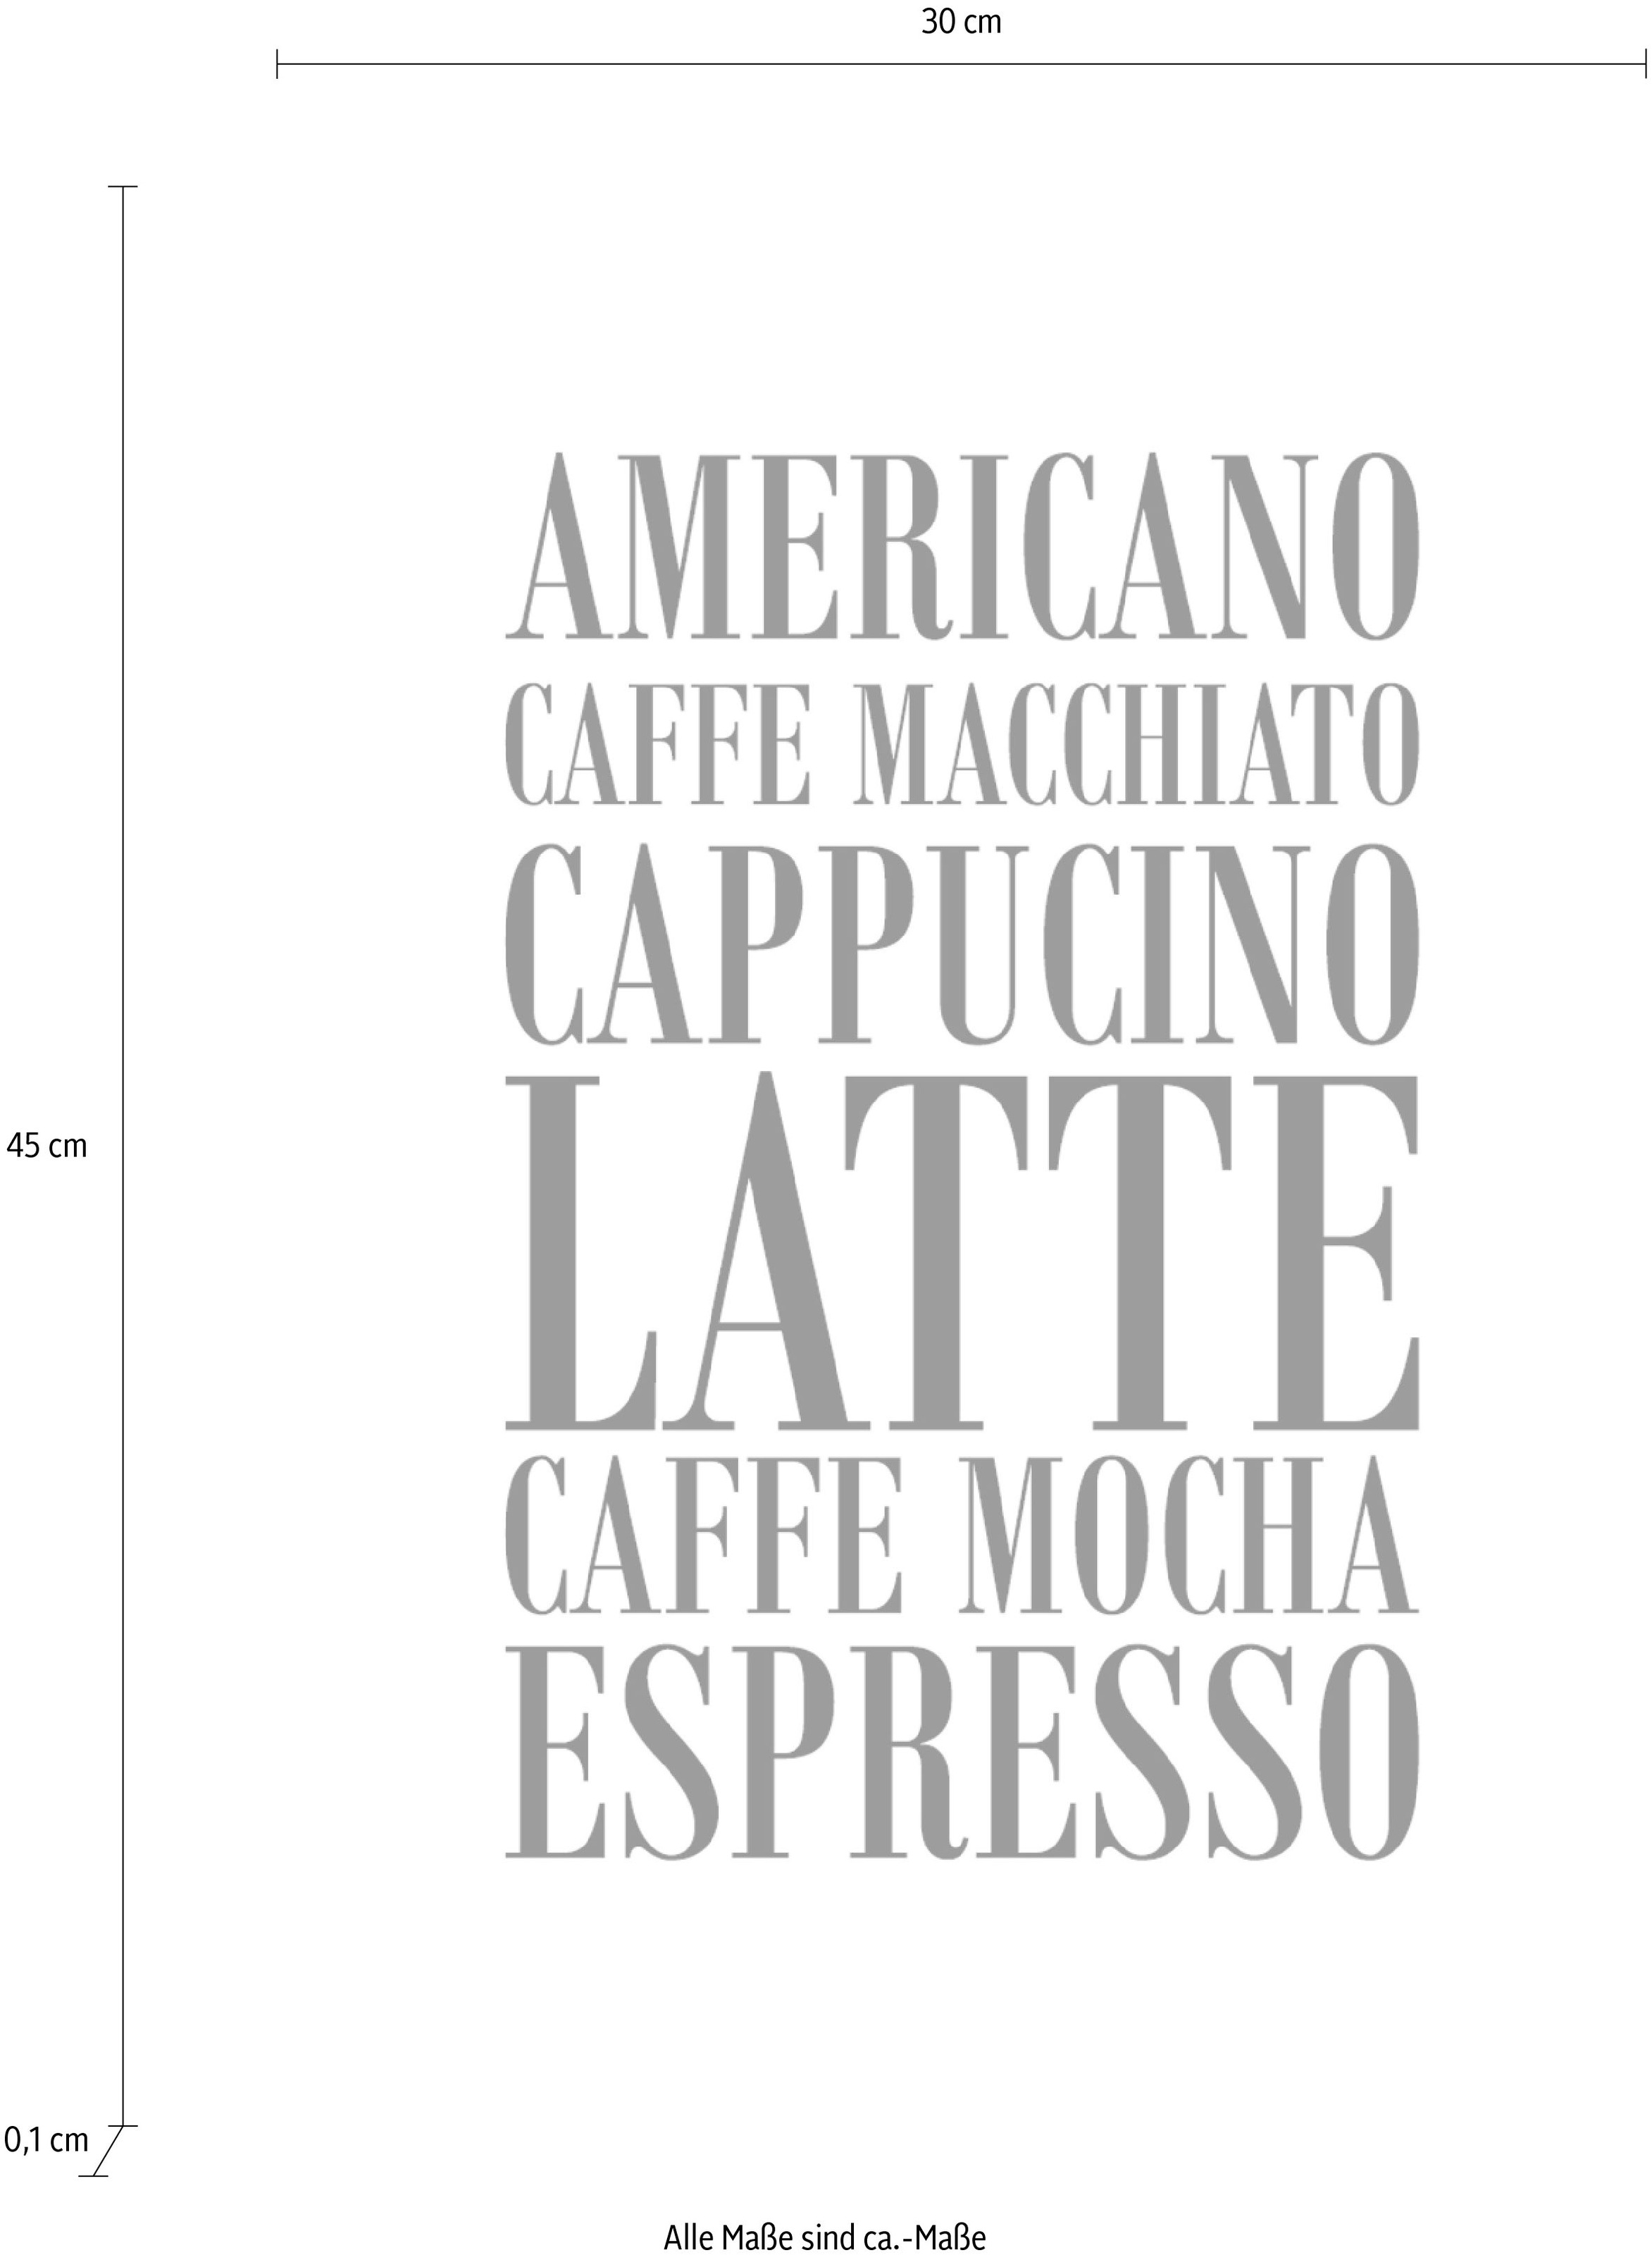 OTTO Stahlblech Schriftzug auf Cappucino, queence ...«, im Wanddekoobjekt Shop »Kaffee, Online Expresso